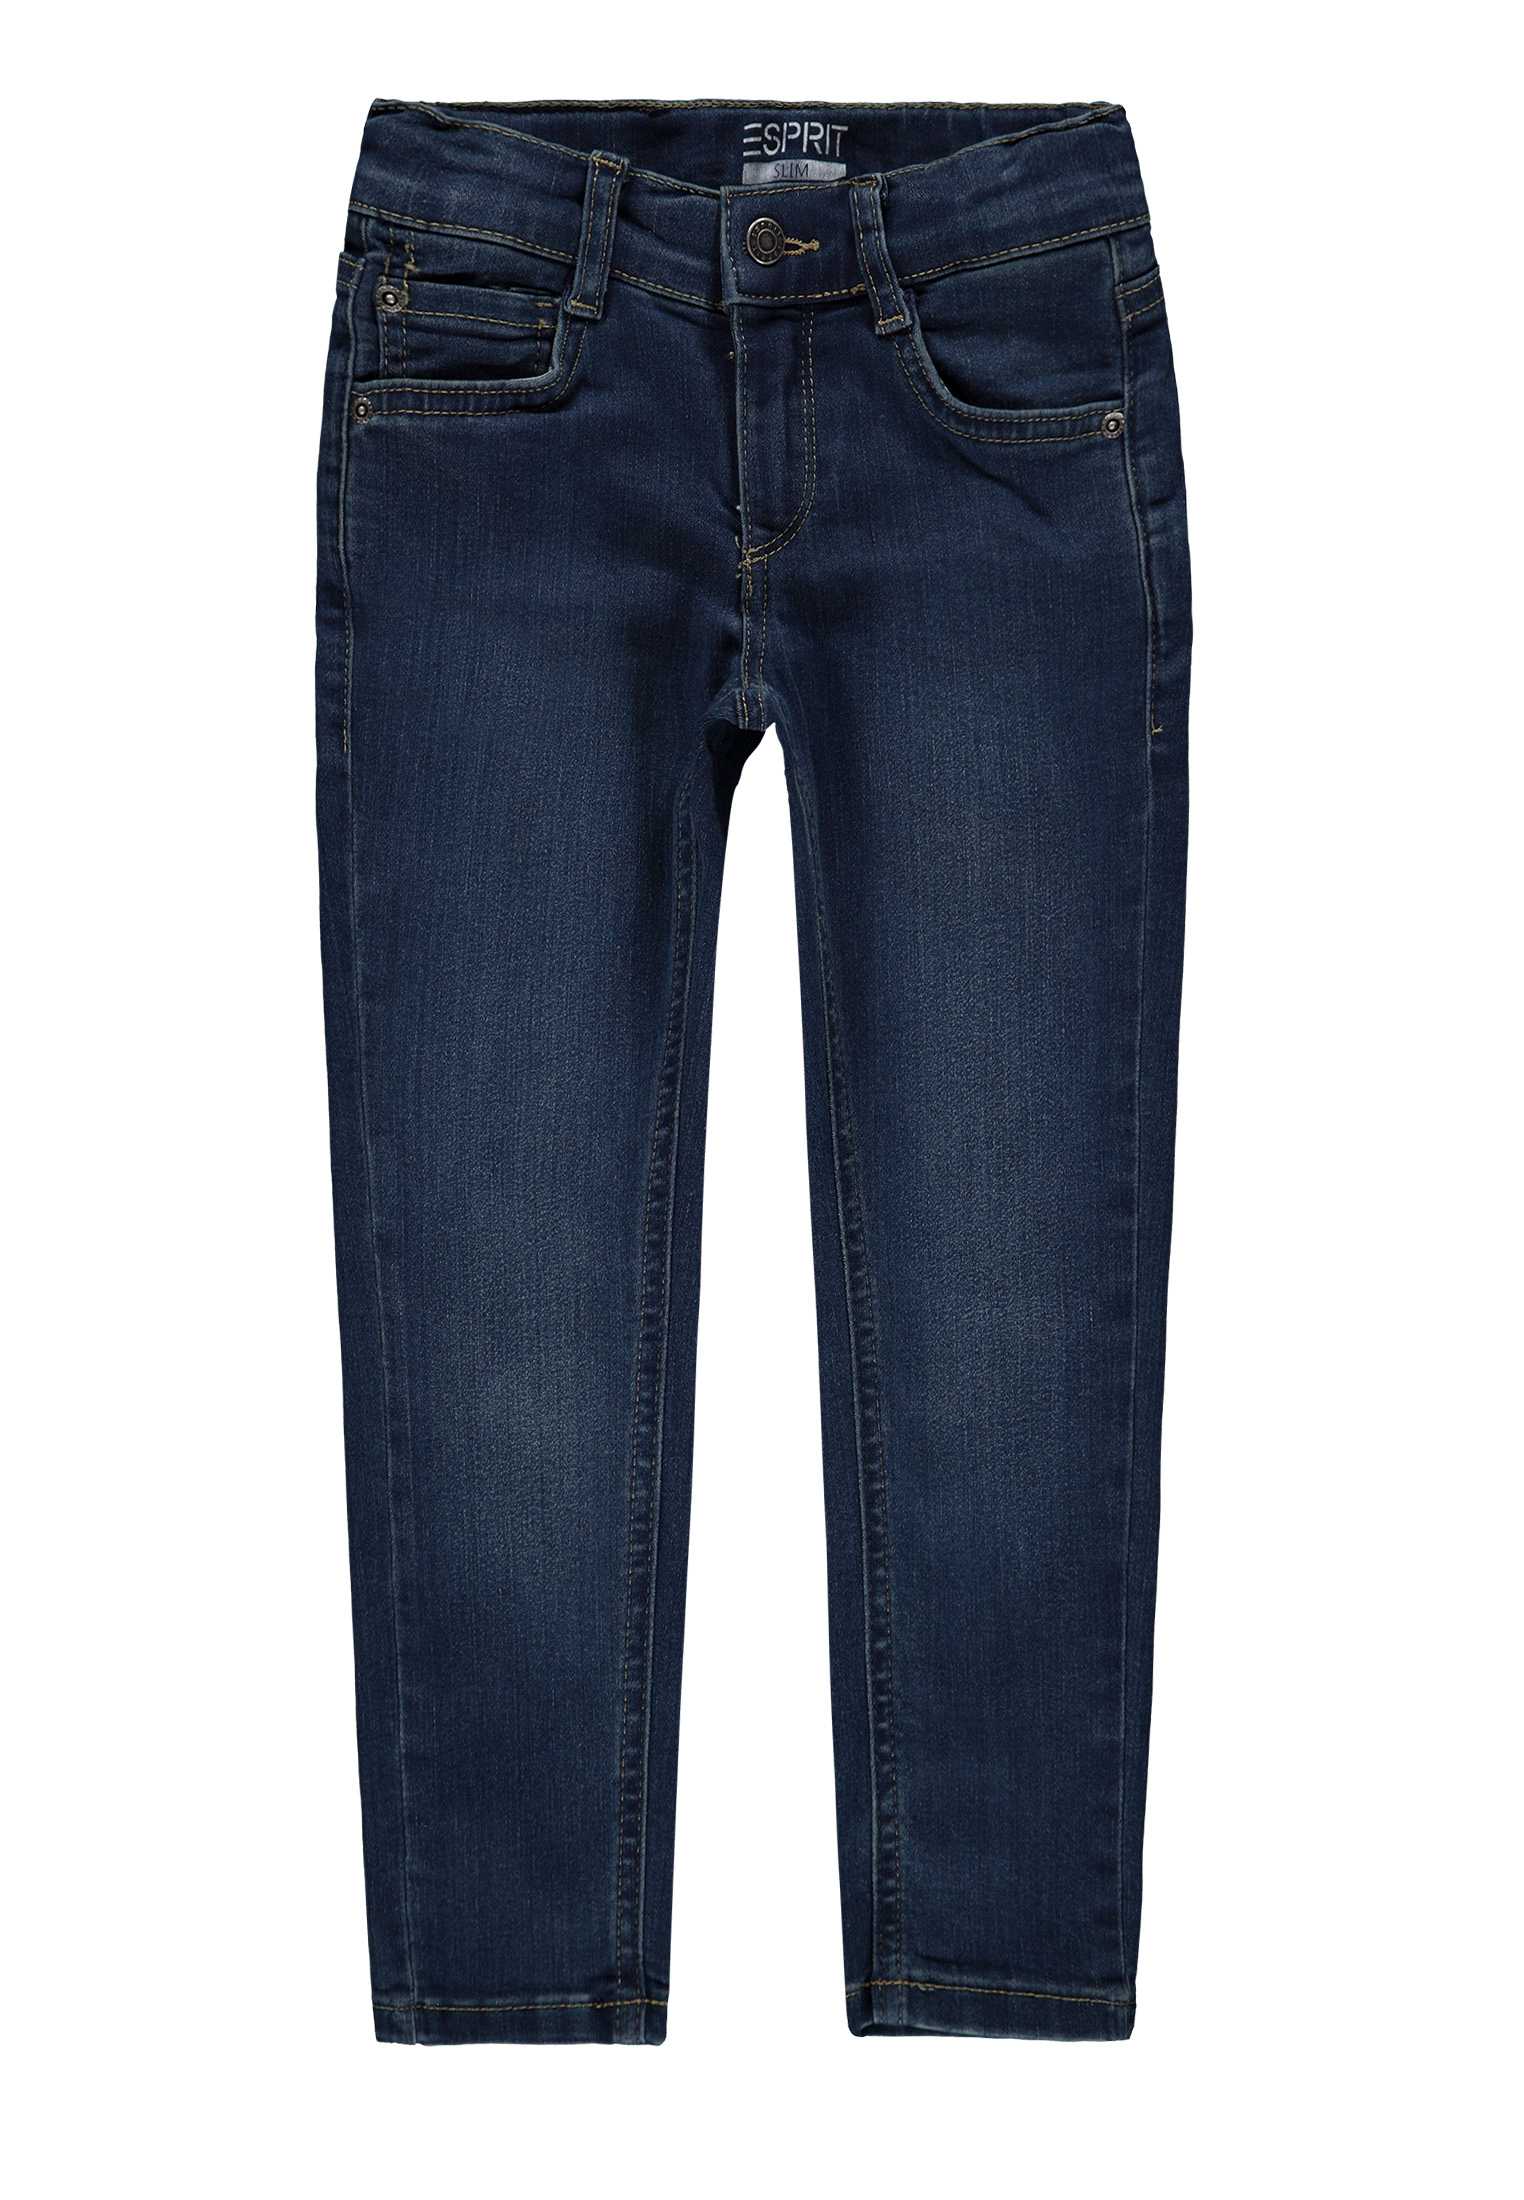 Spodnie jeansowe dla chłopca, Regular Fit, niebieskie, Esprit